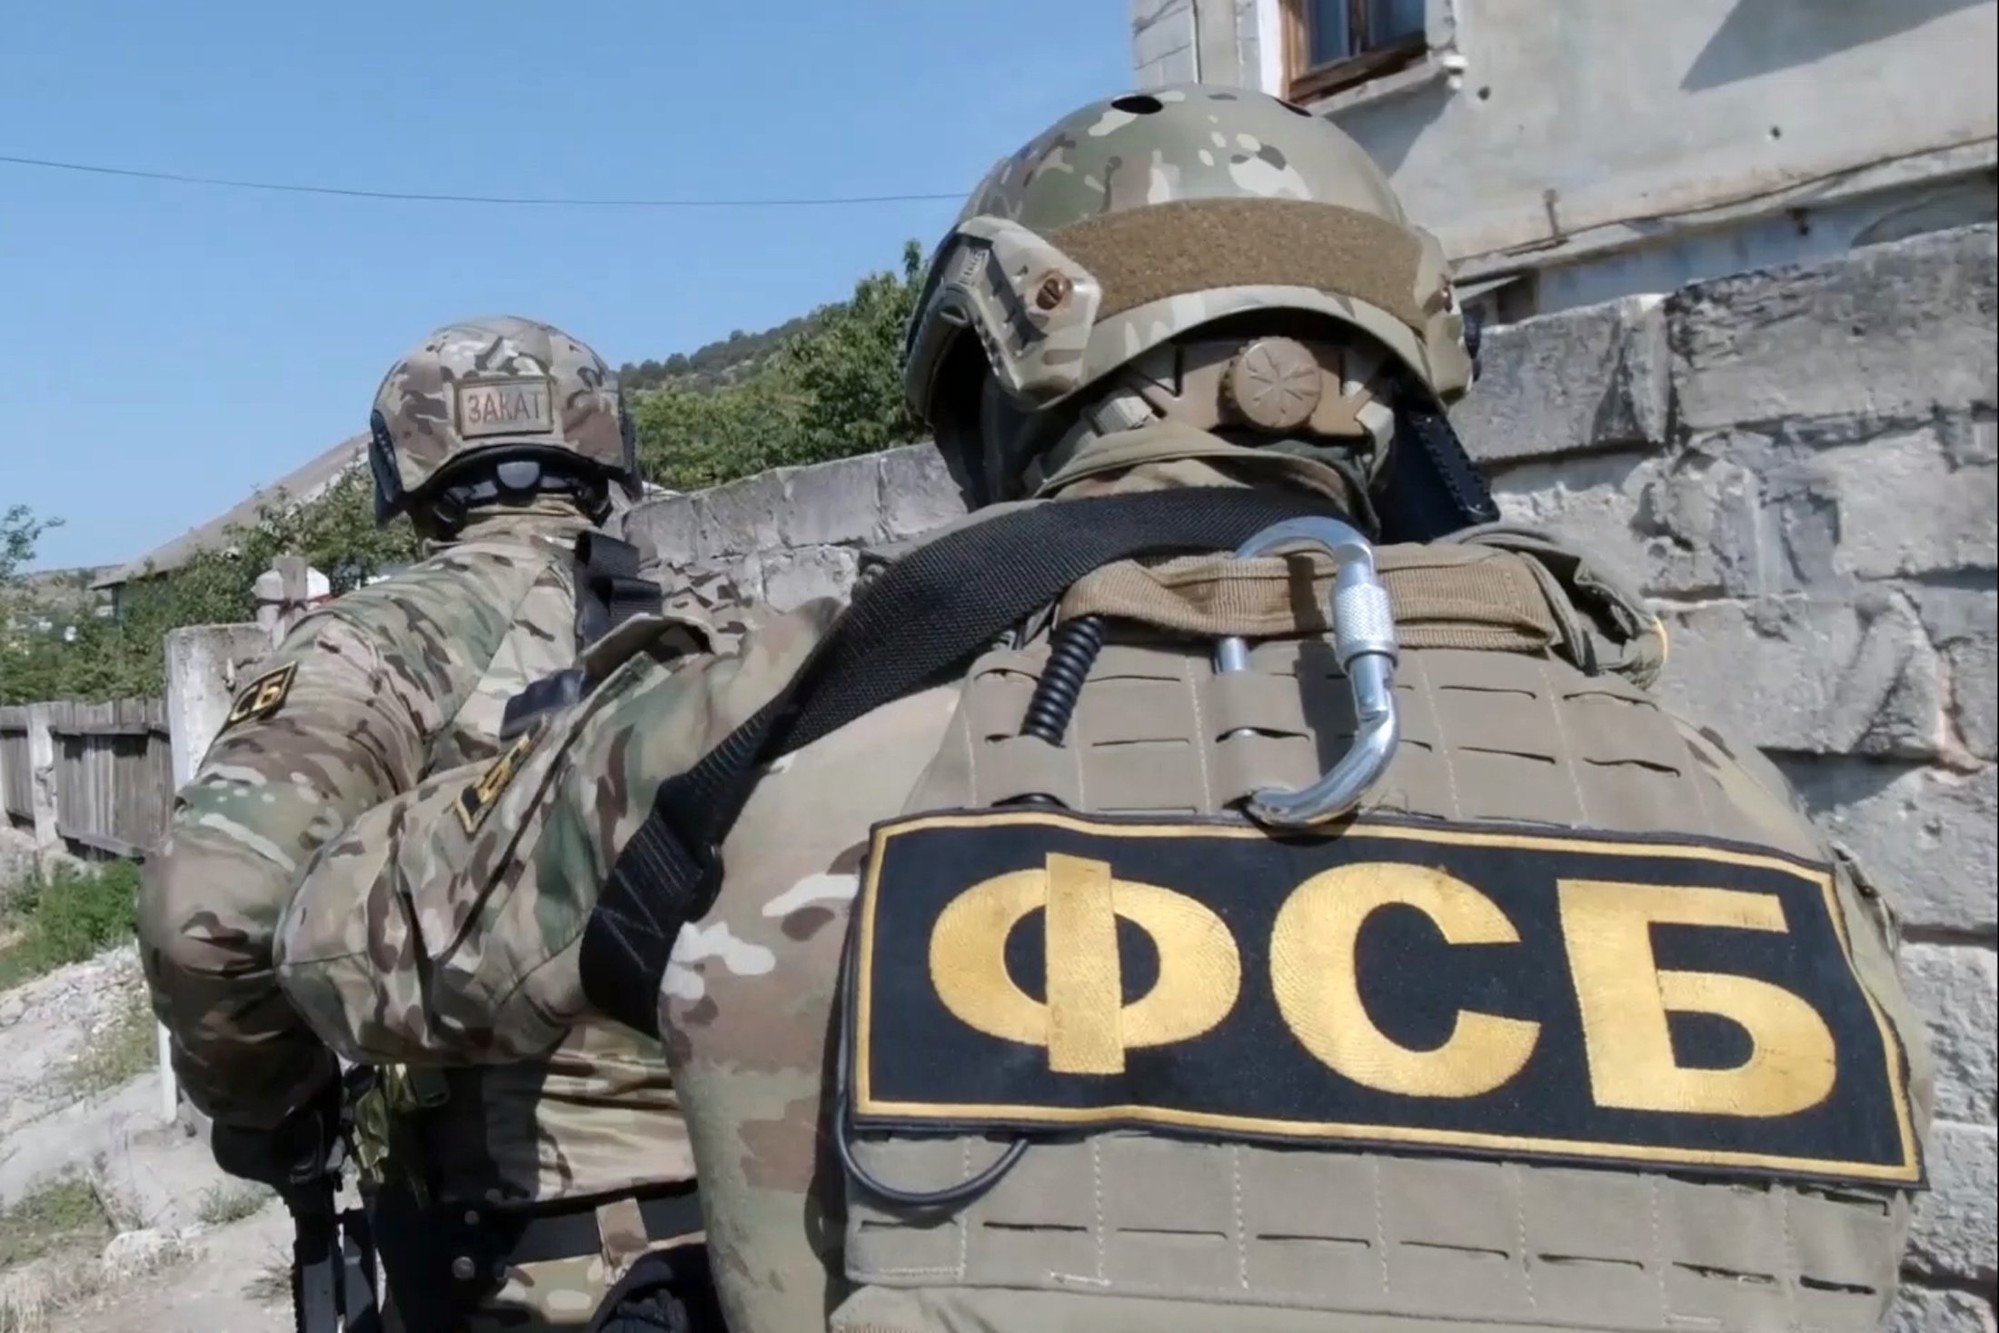 Український спецназ намагався "вкрасти ополченця", - ЗМІ про перестрілку